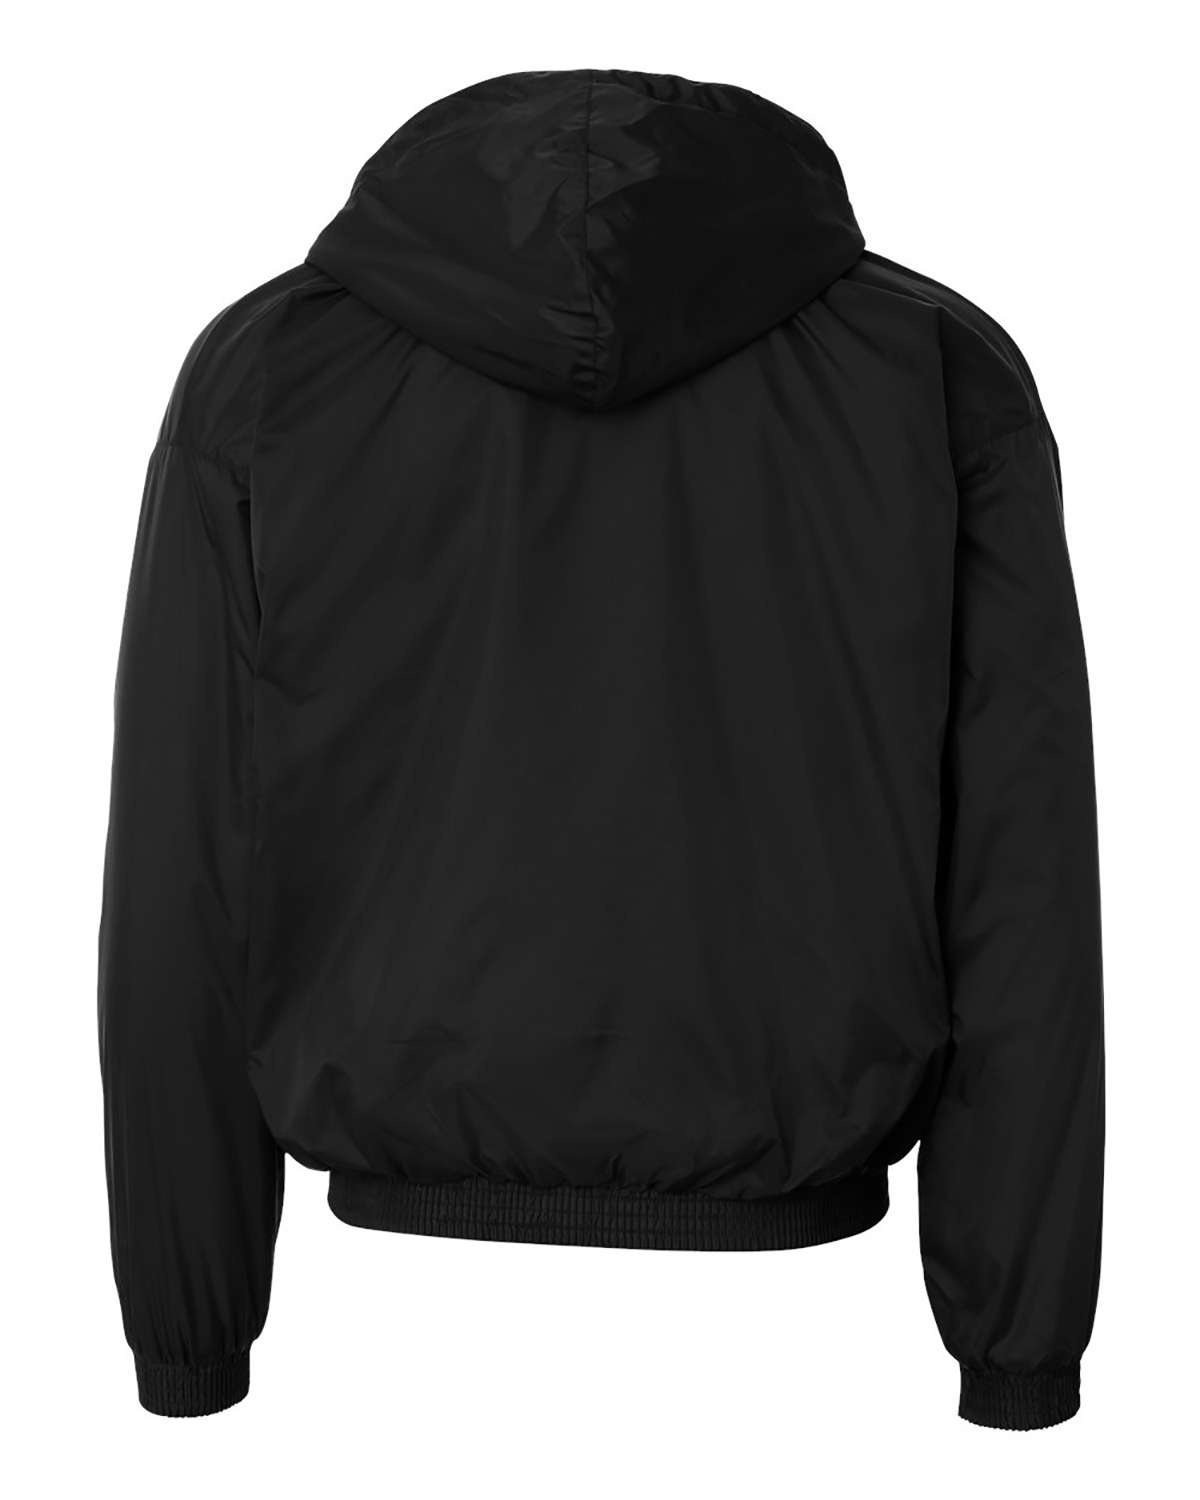 'Augusta Sportswear 3280 Hooded Fleece Lined Jacket'